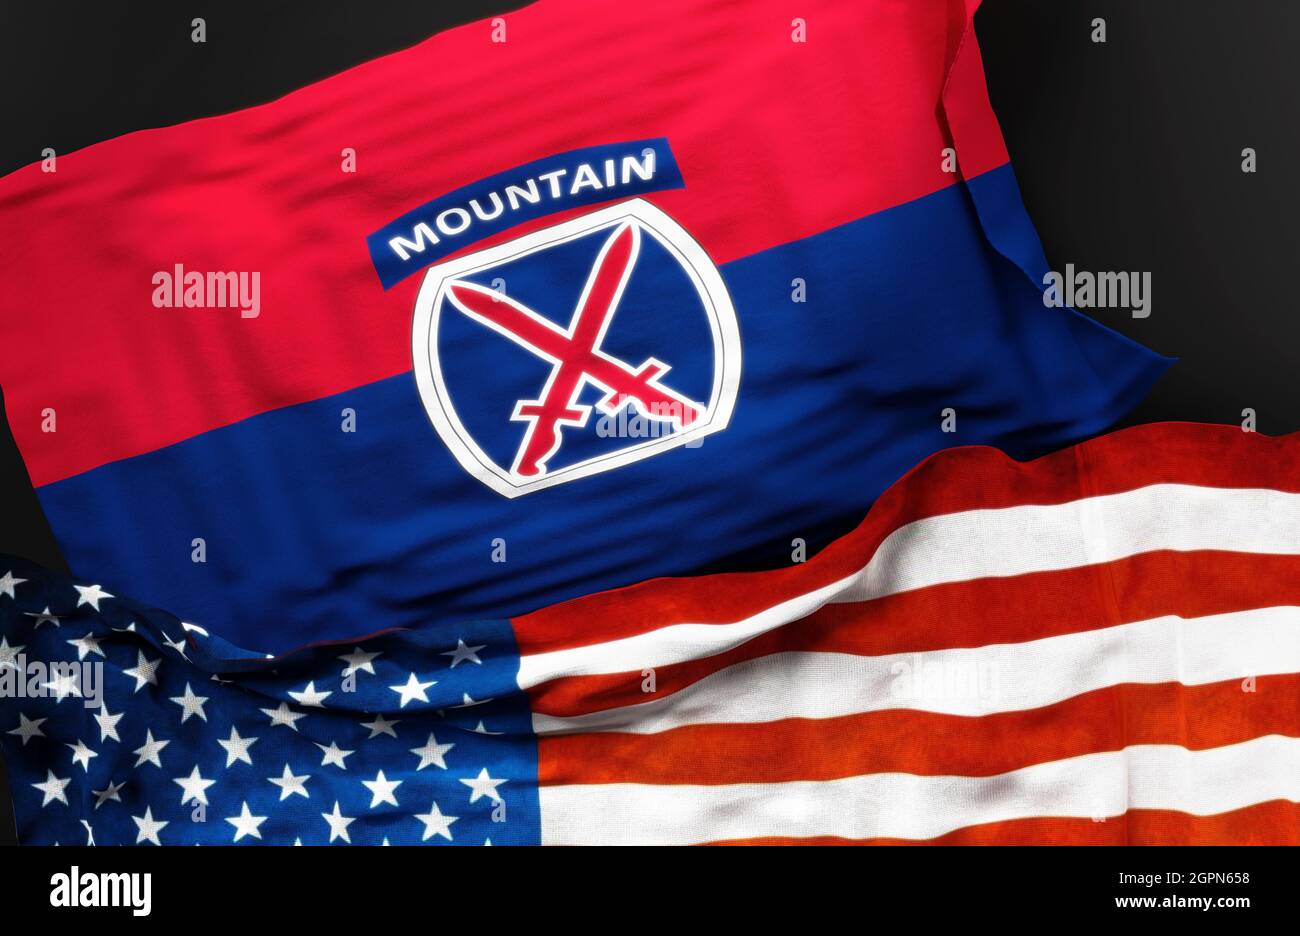 Bandiera della US Army 10th Mountain Division insieme ad una bandiera degli Stati Uniti d'America come simbolo di una connessione tra loro, 3d i. Foto Stock